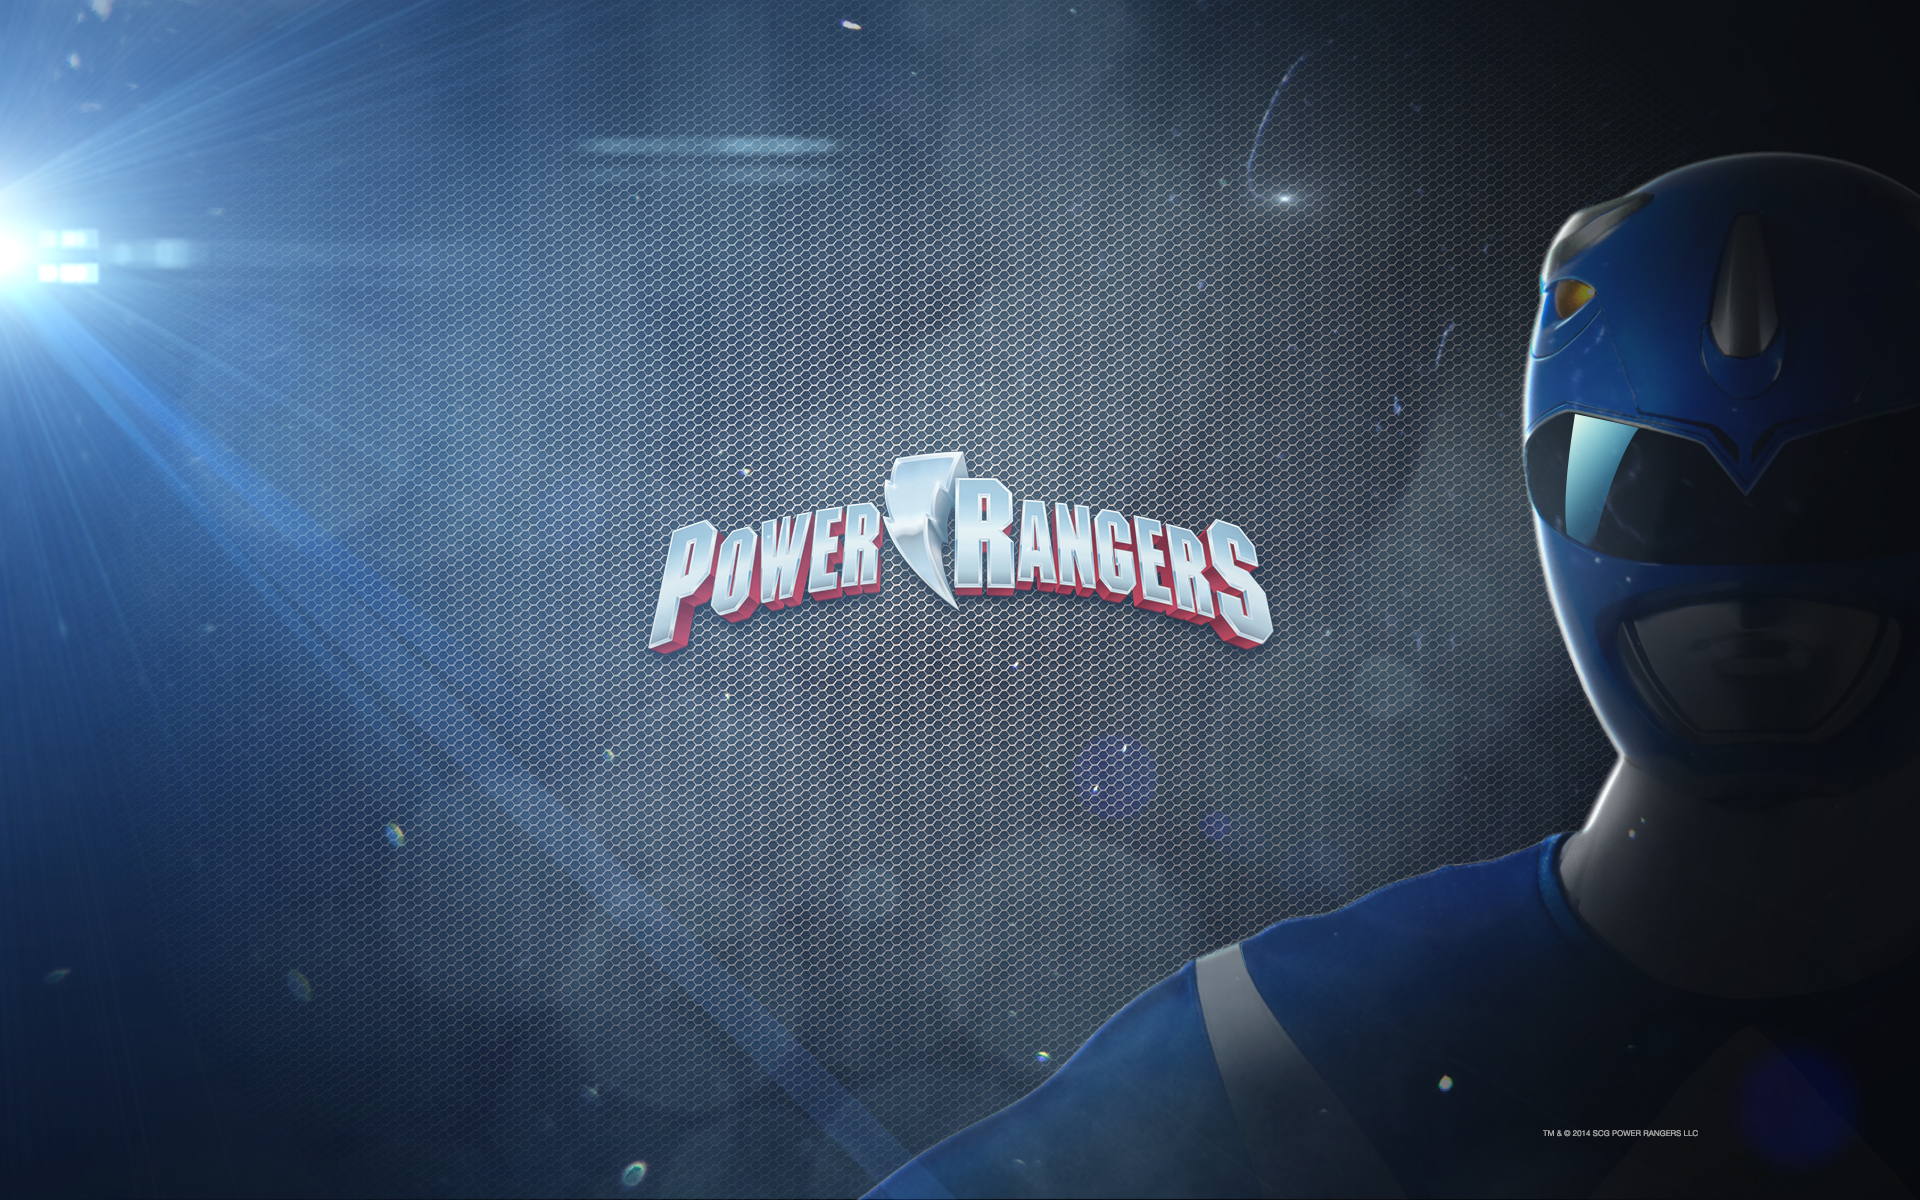 Power Ranger Backgrounds